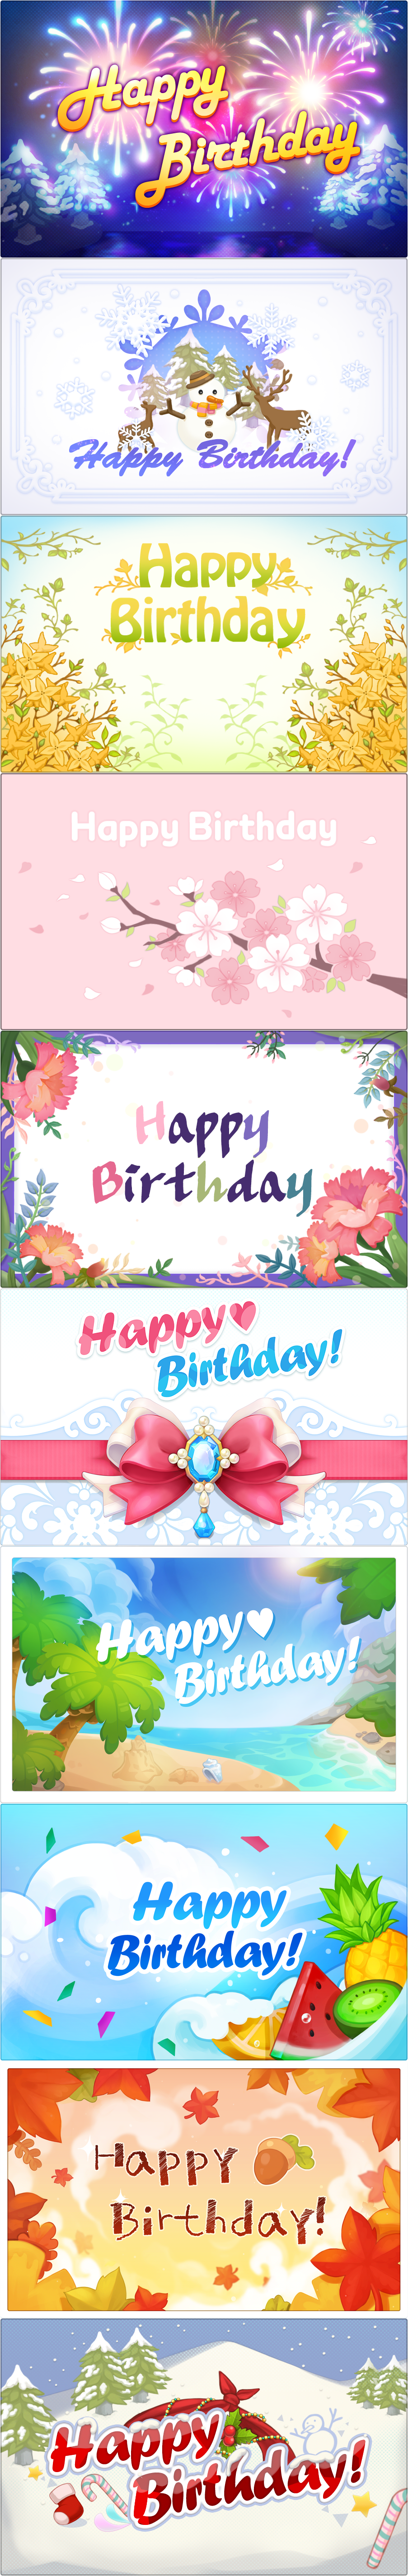 MapleStory 2 - Birthday Cards